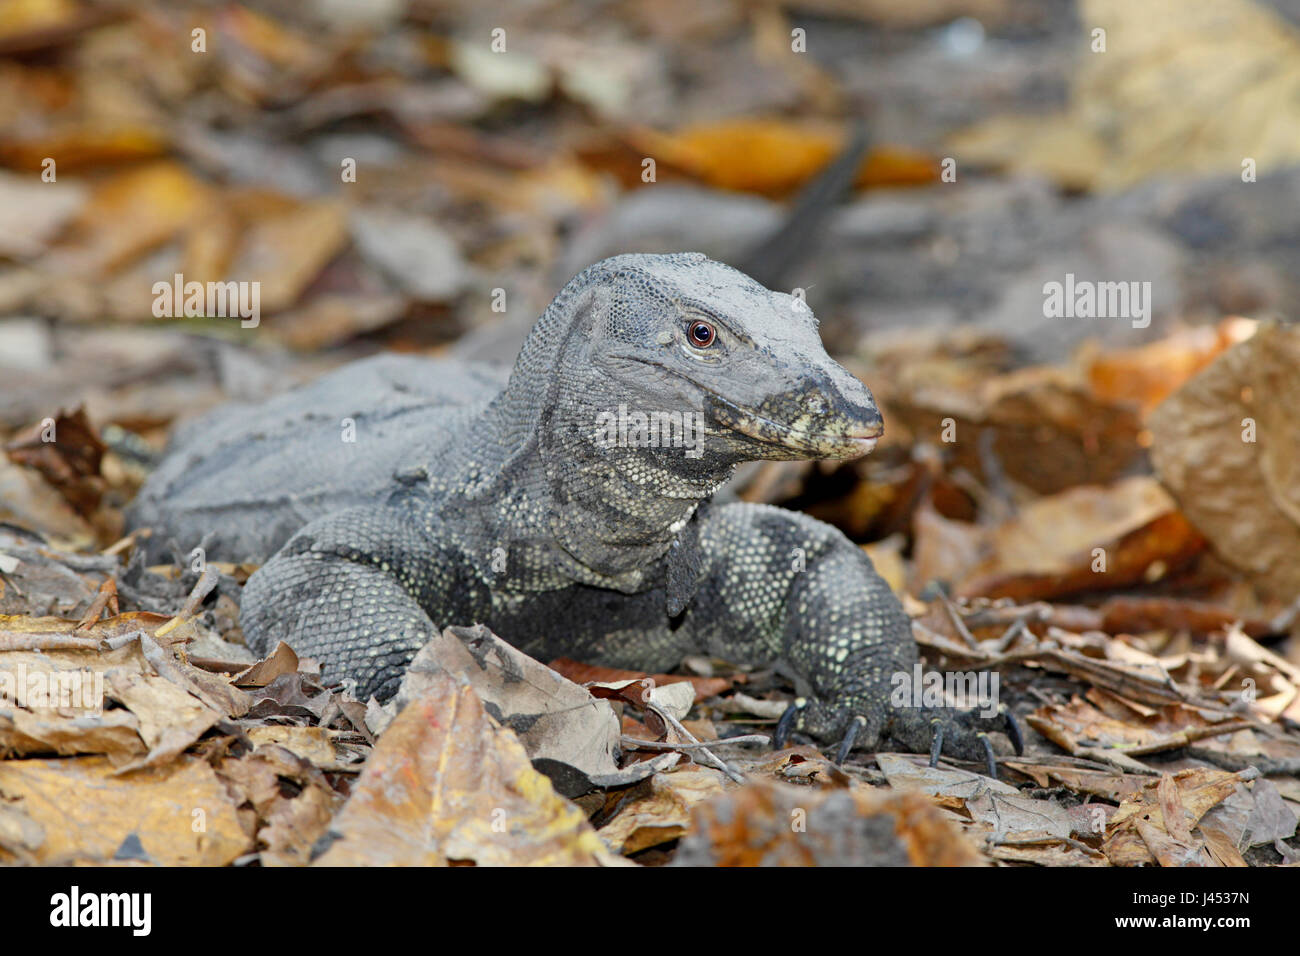 Foto de un monitor de agua, una de las mayores especies de lagartijas en la tierra Foto de stock